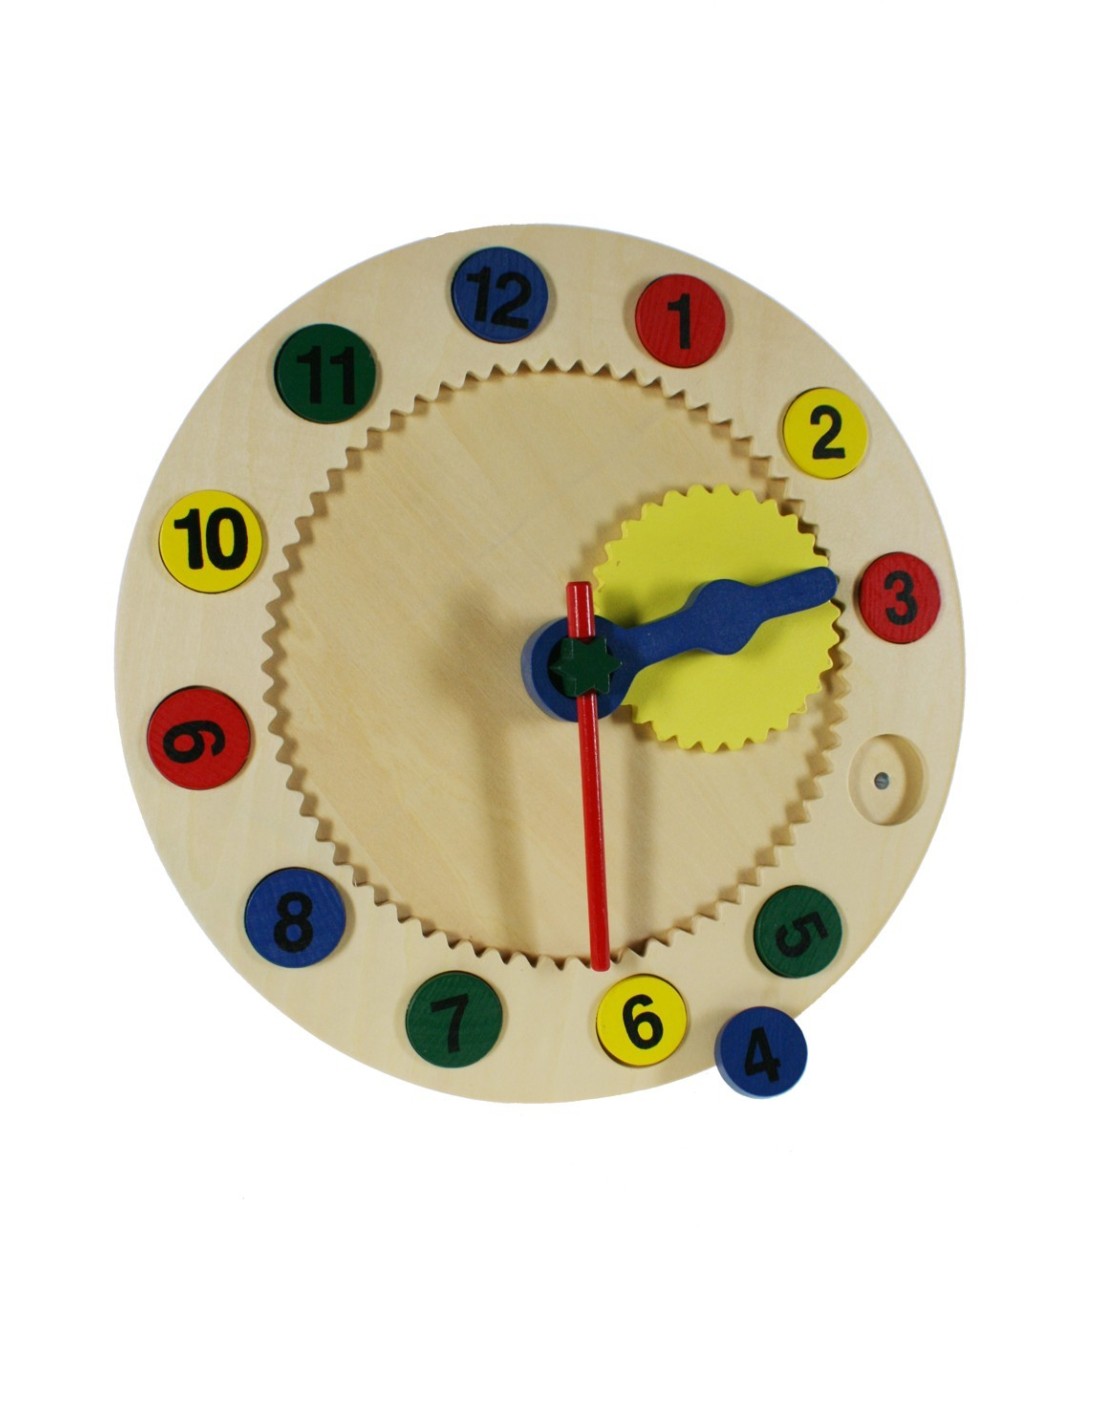 Horloge magnétique pour apprendre à lire l'heure